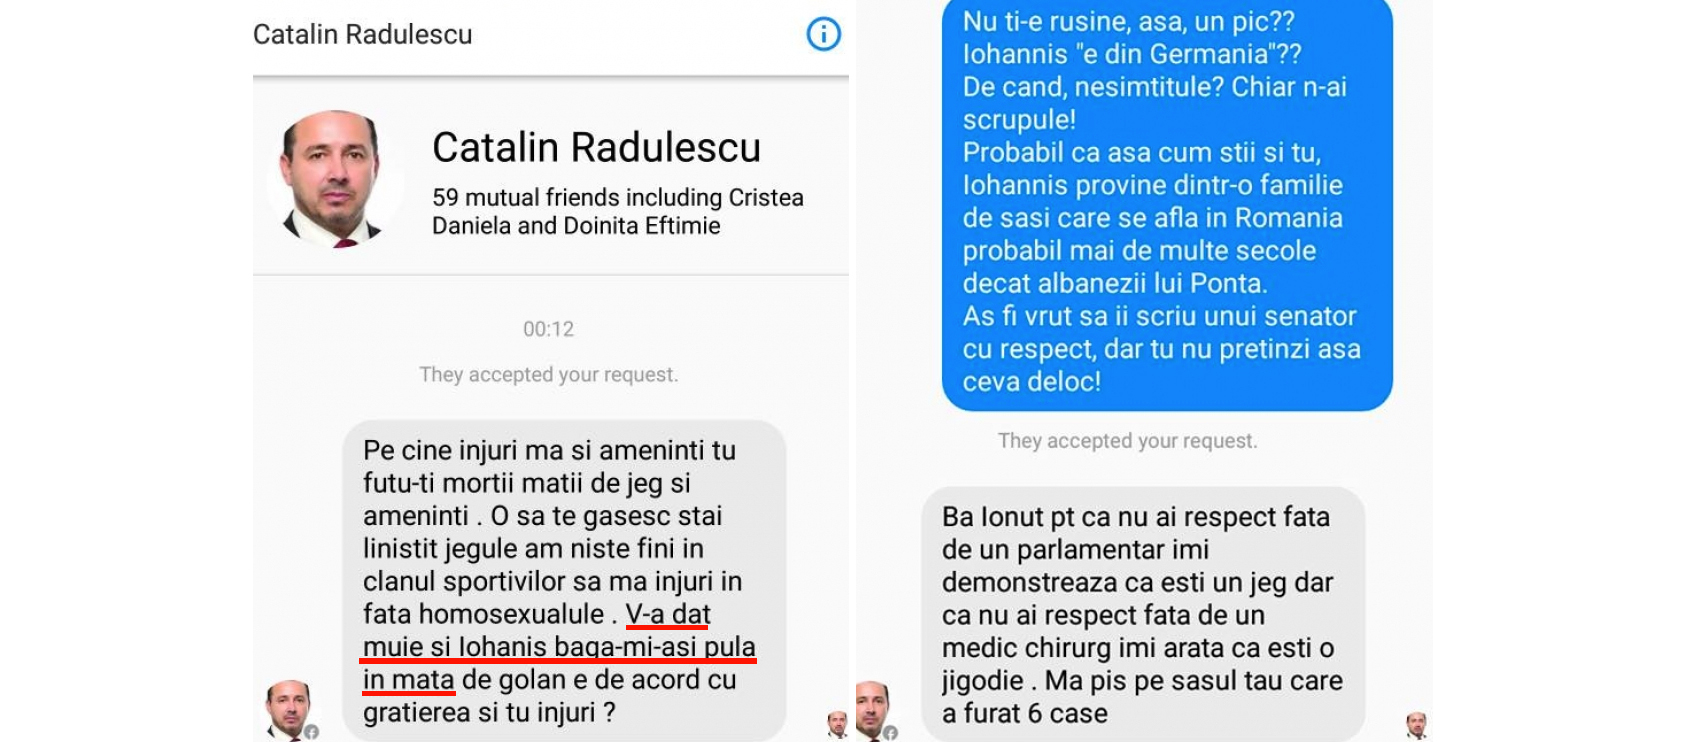 Cătălin Rădulescu, PSD, vă înjură pe internet. Mâine poate vă și mitraliază!